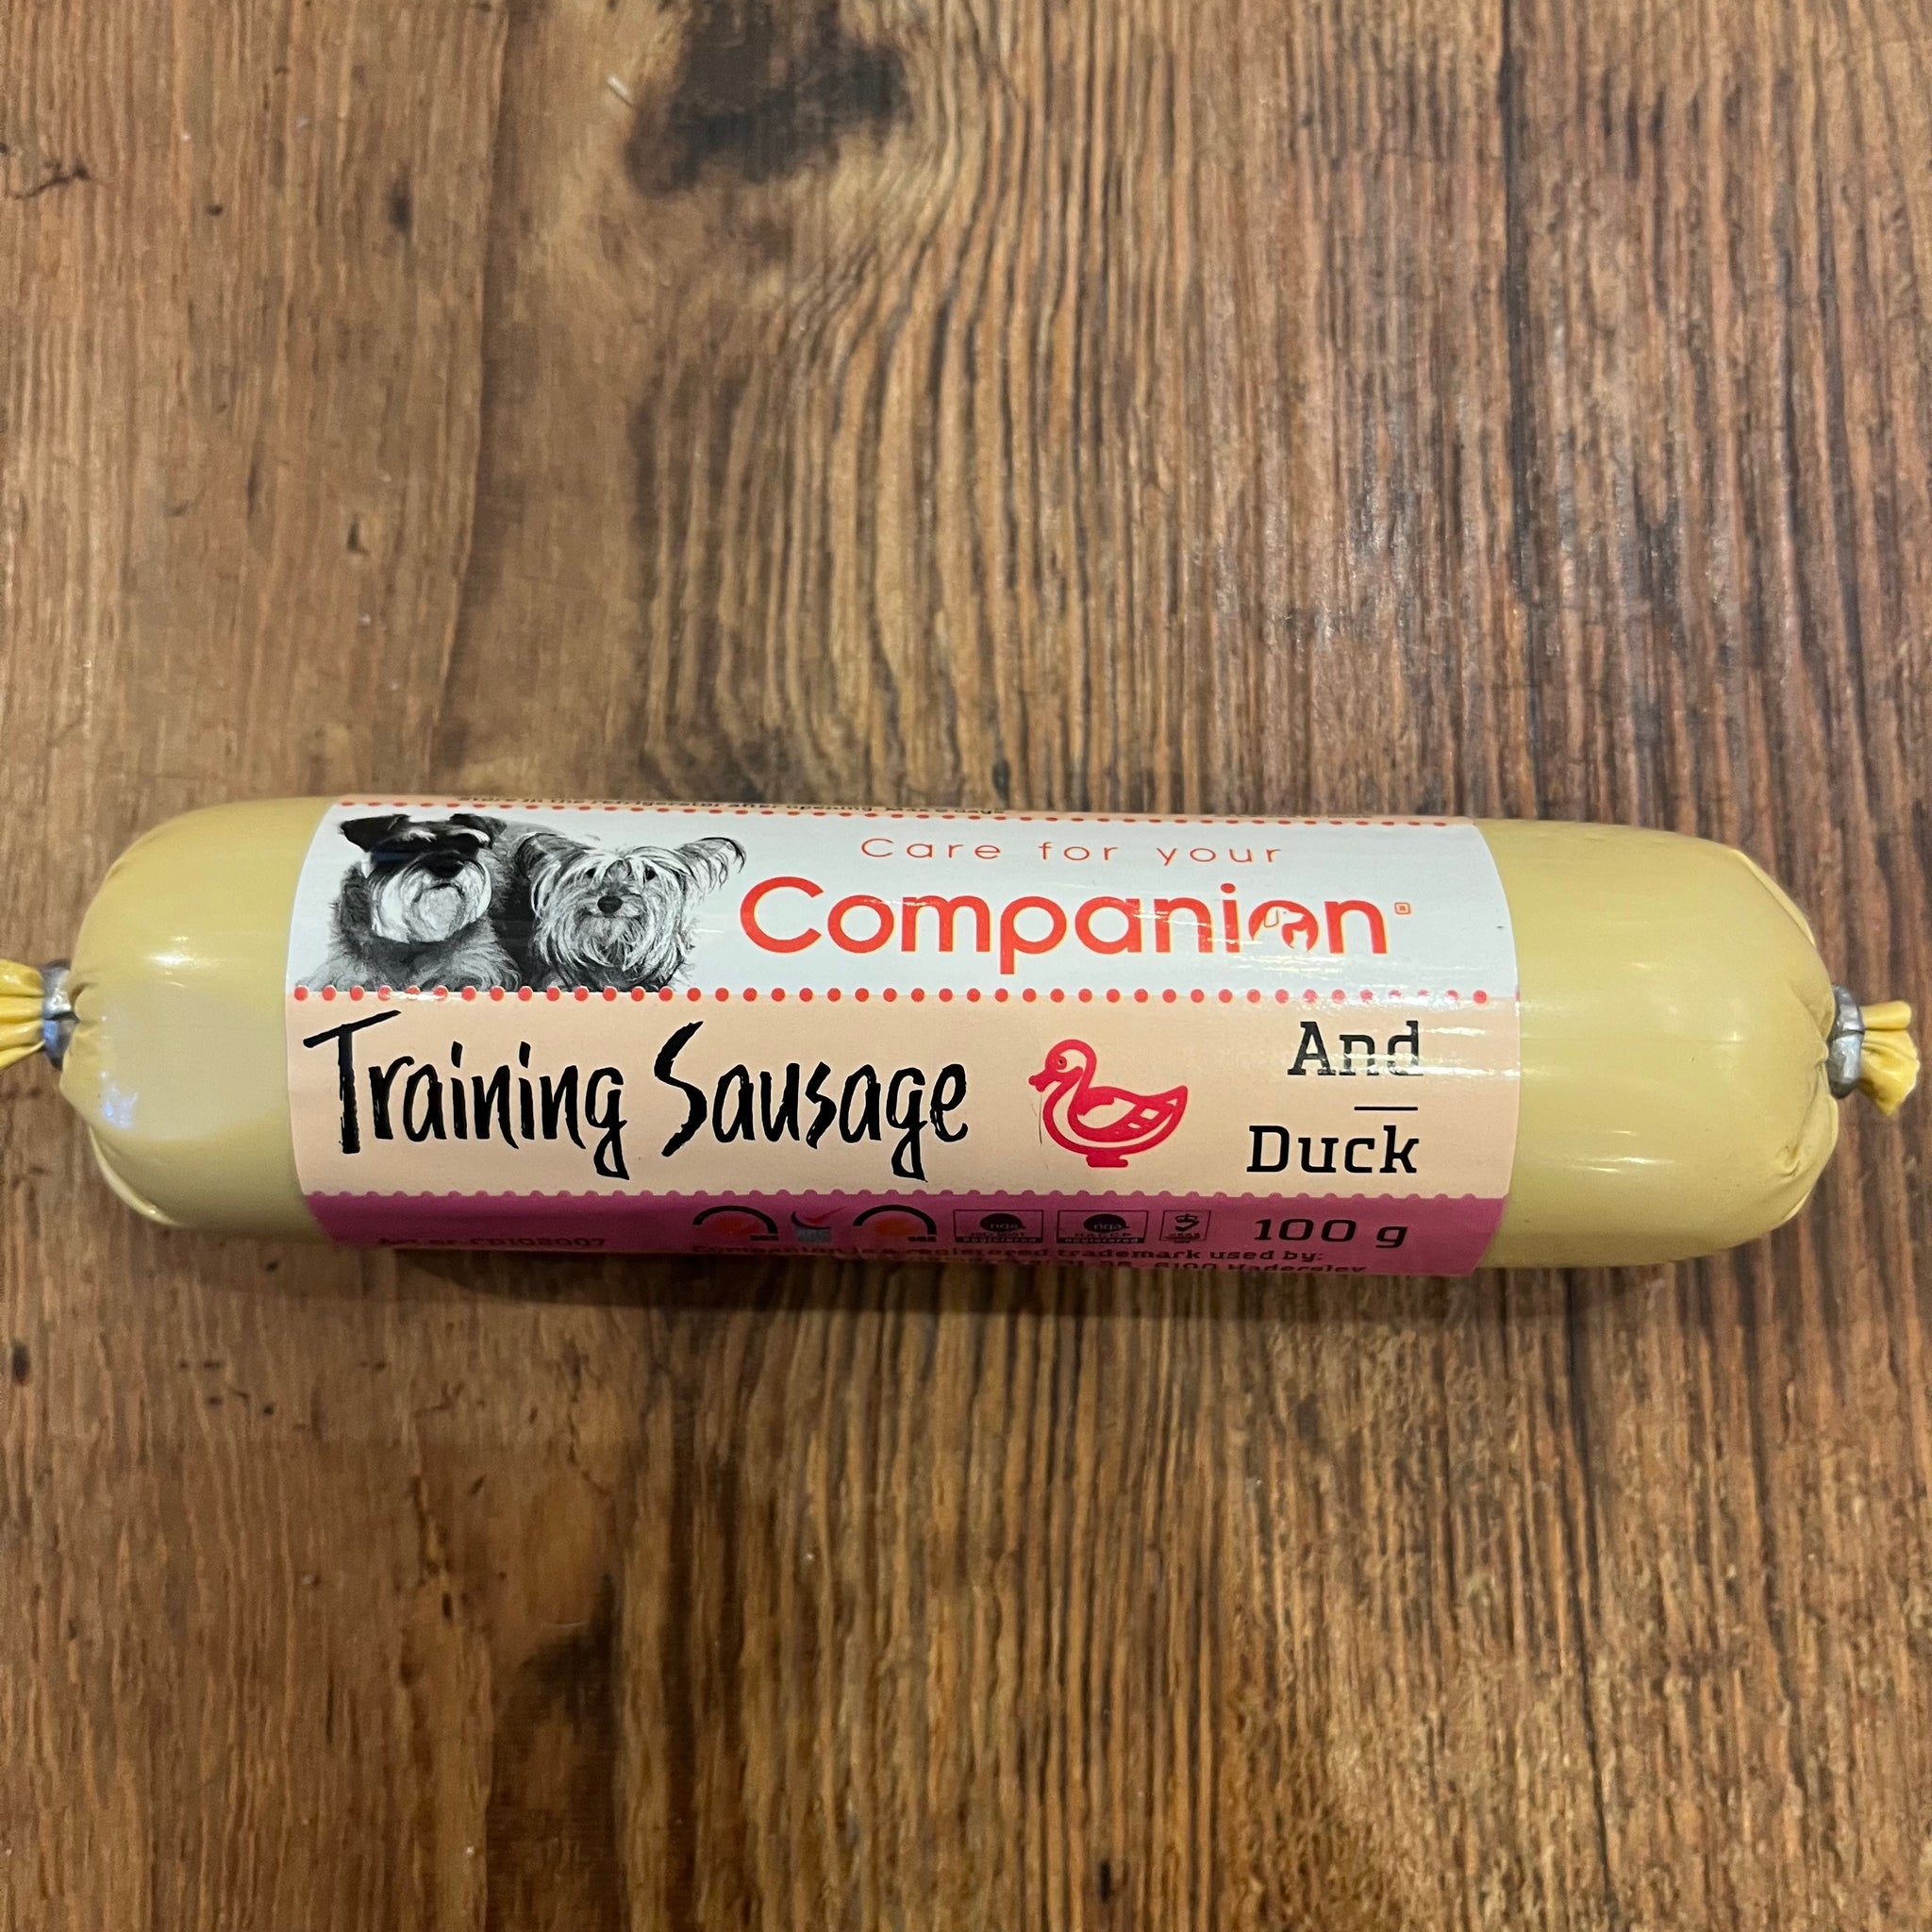 Companion Training Sausage